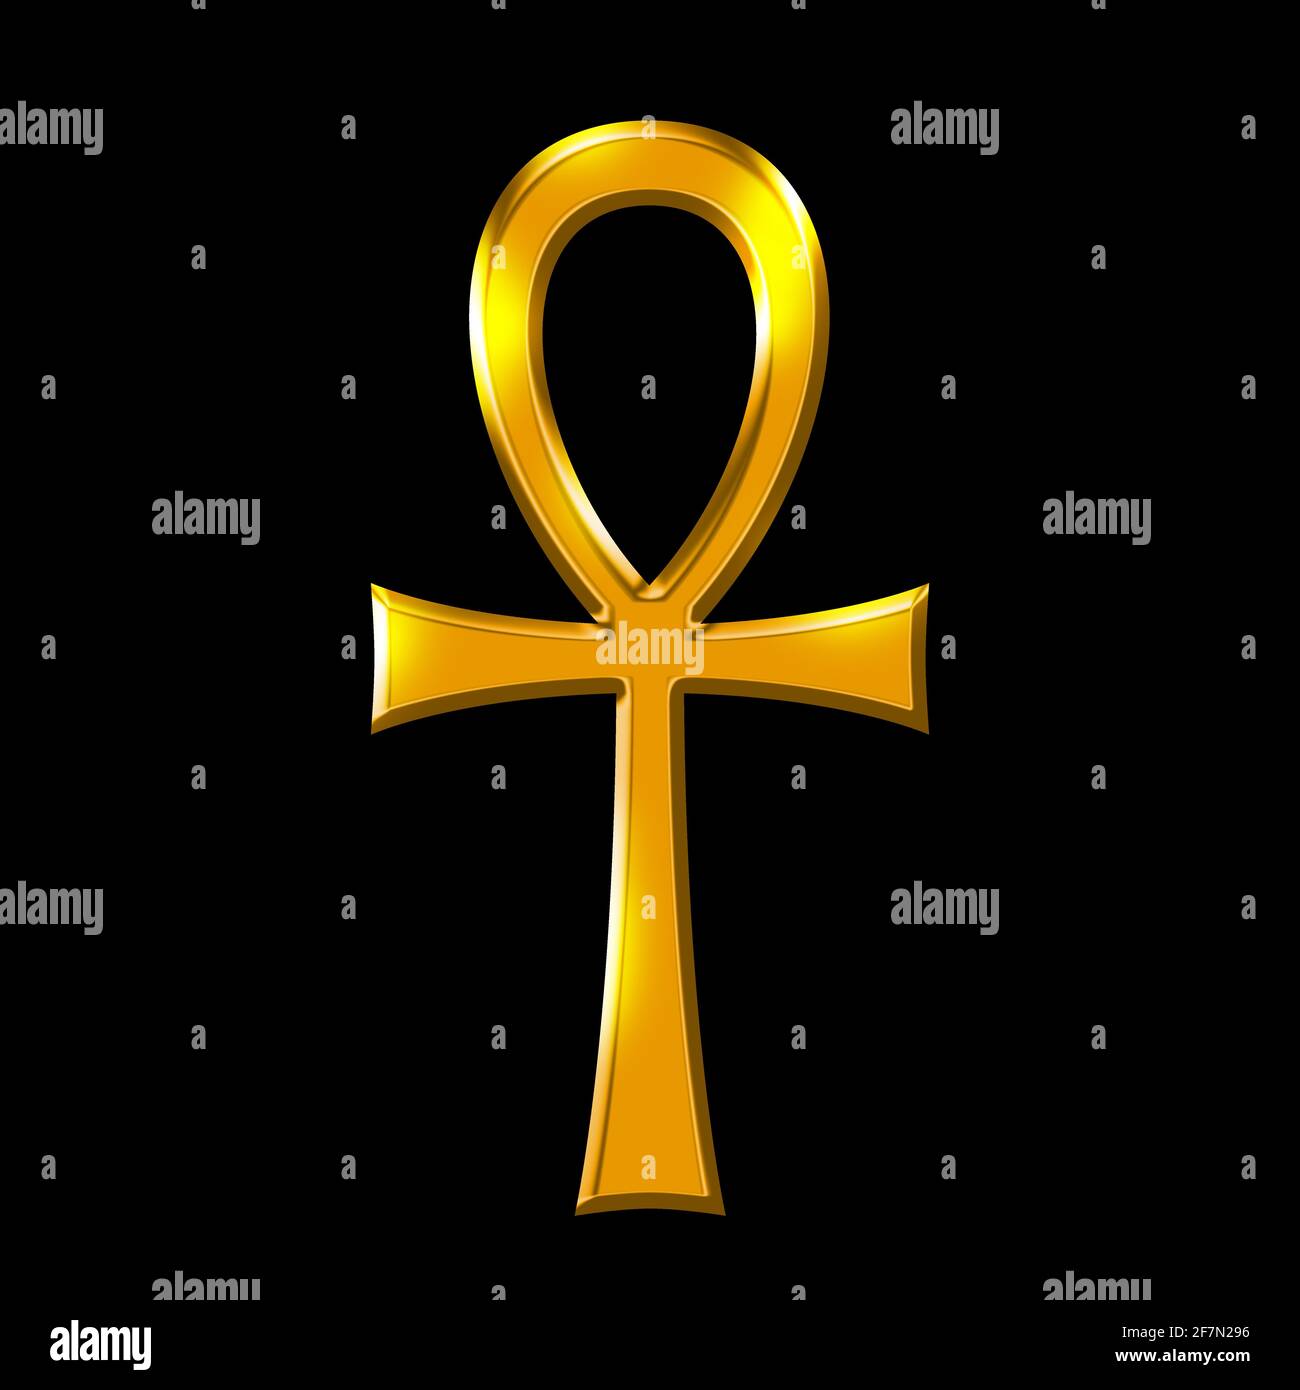 Goldenes Ankh-Symbol, der Schlüssel zum Leben über Schwarz. Atem des Lebens, Schlüssel des Nils, Crux ansata. Kreuz mit Griff. Altägyptisches Zeichen und Hieroglyphe. Stockfoto